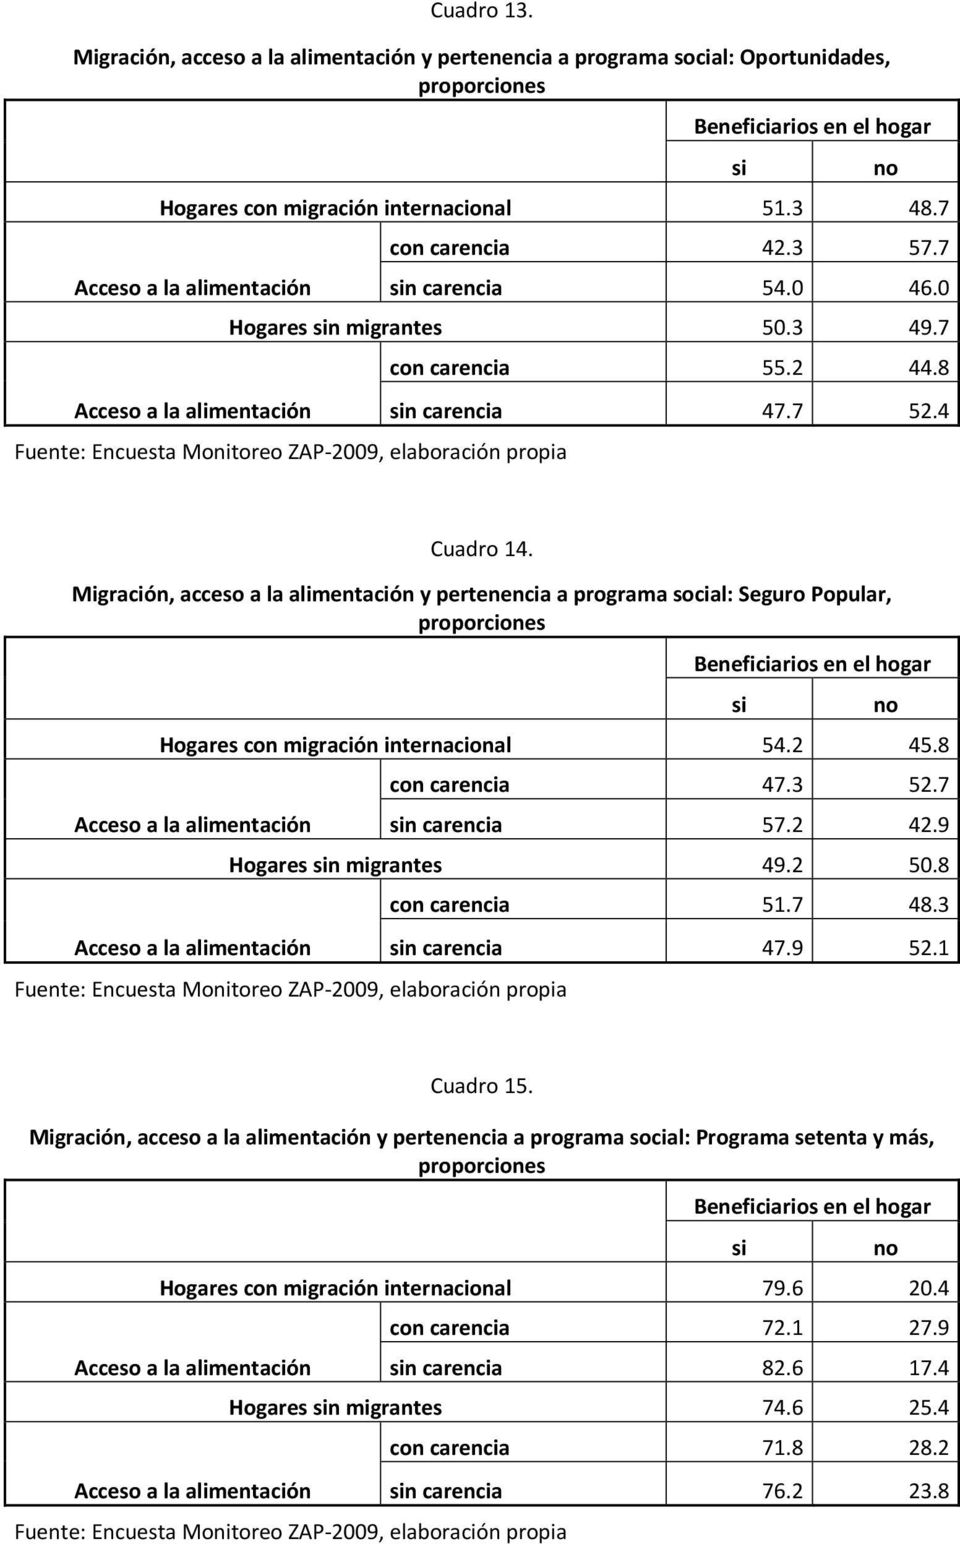 Migración, acceso a la alimentación y pertenencia a programa social: Seguro Popular, proporciones Beneficiarios en el hogar Hogares con migración internacional 54.2 45.8 con carencia 47.3 52.